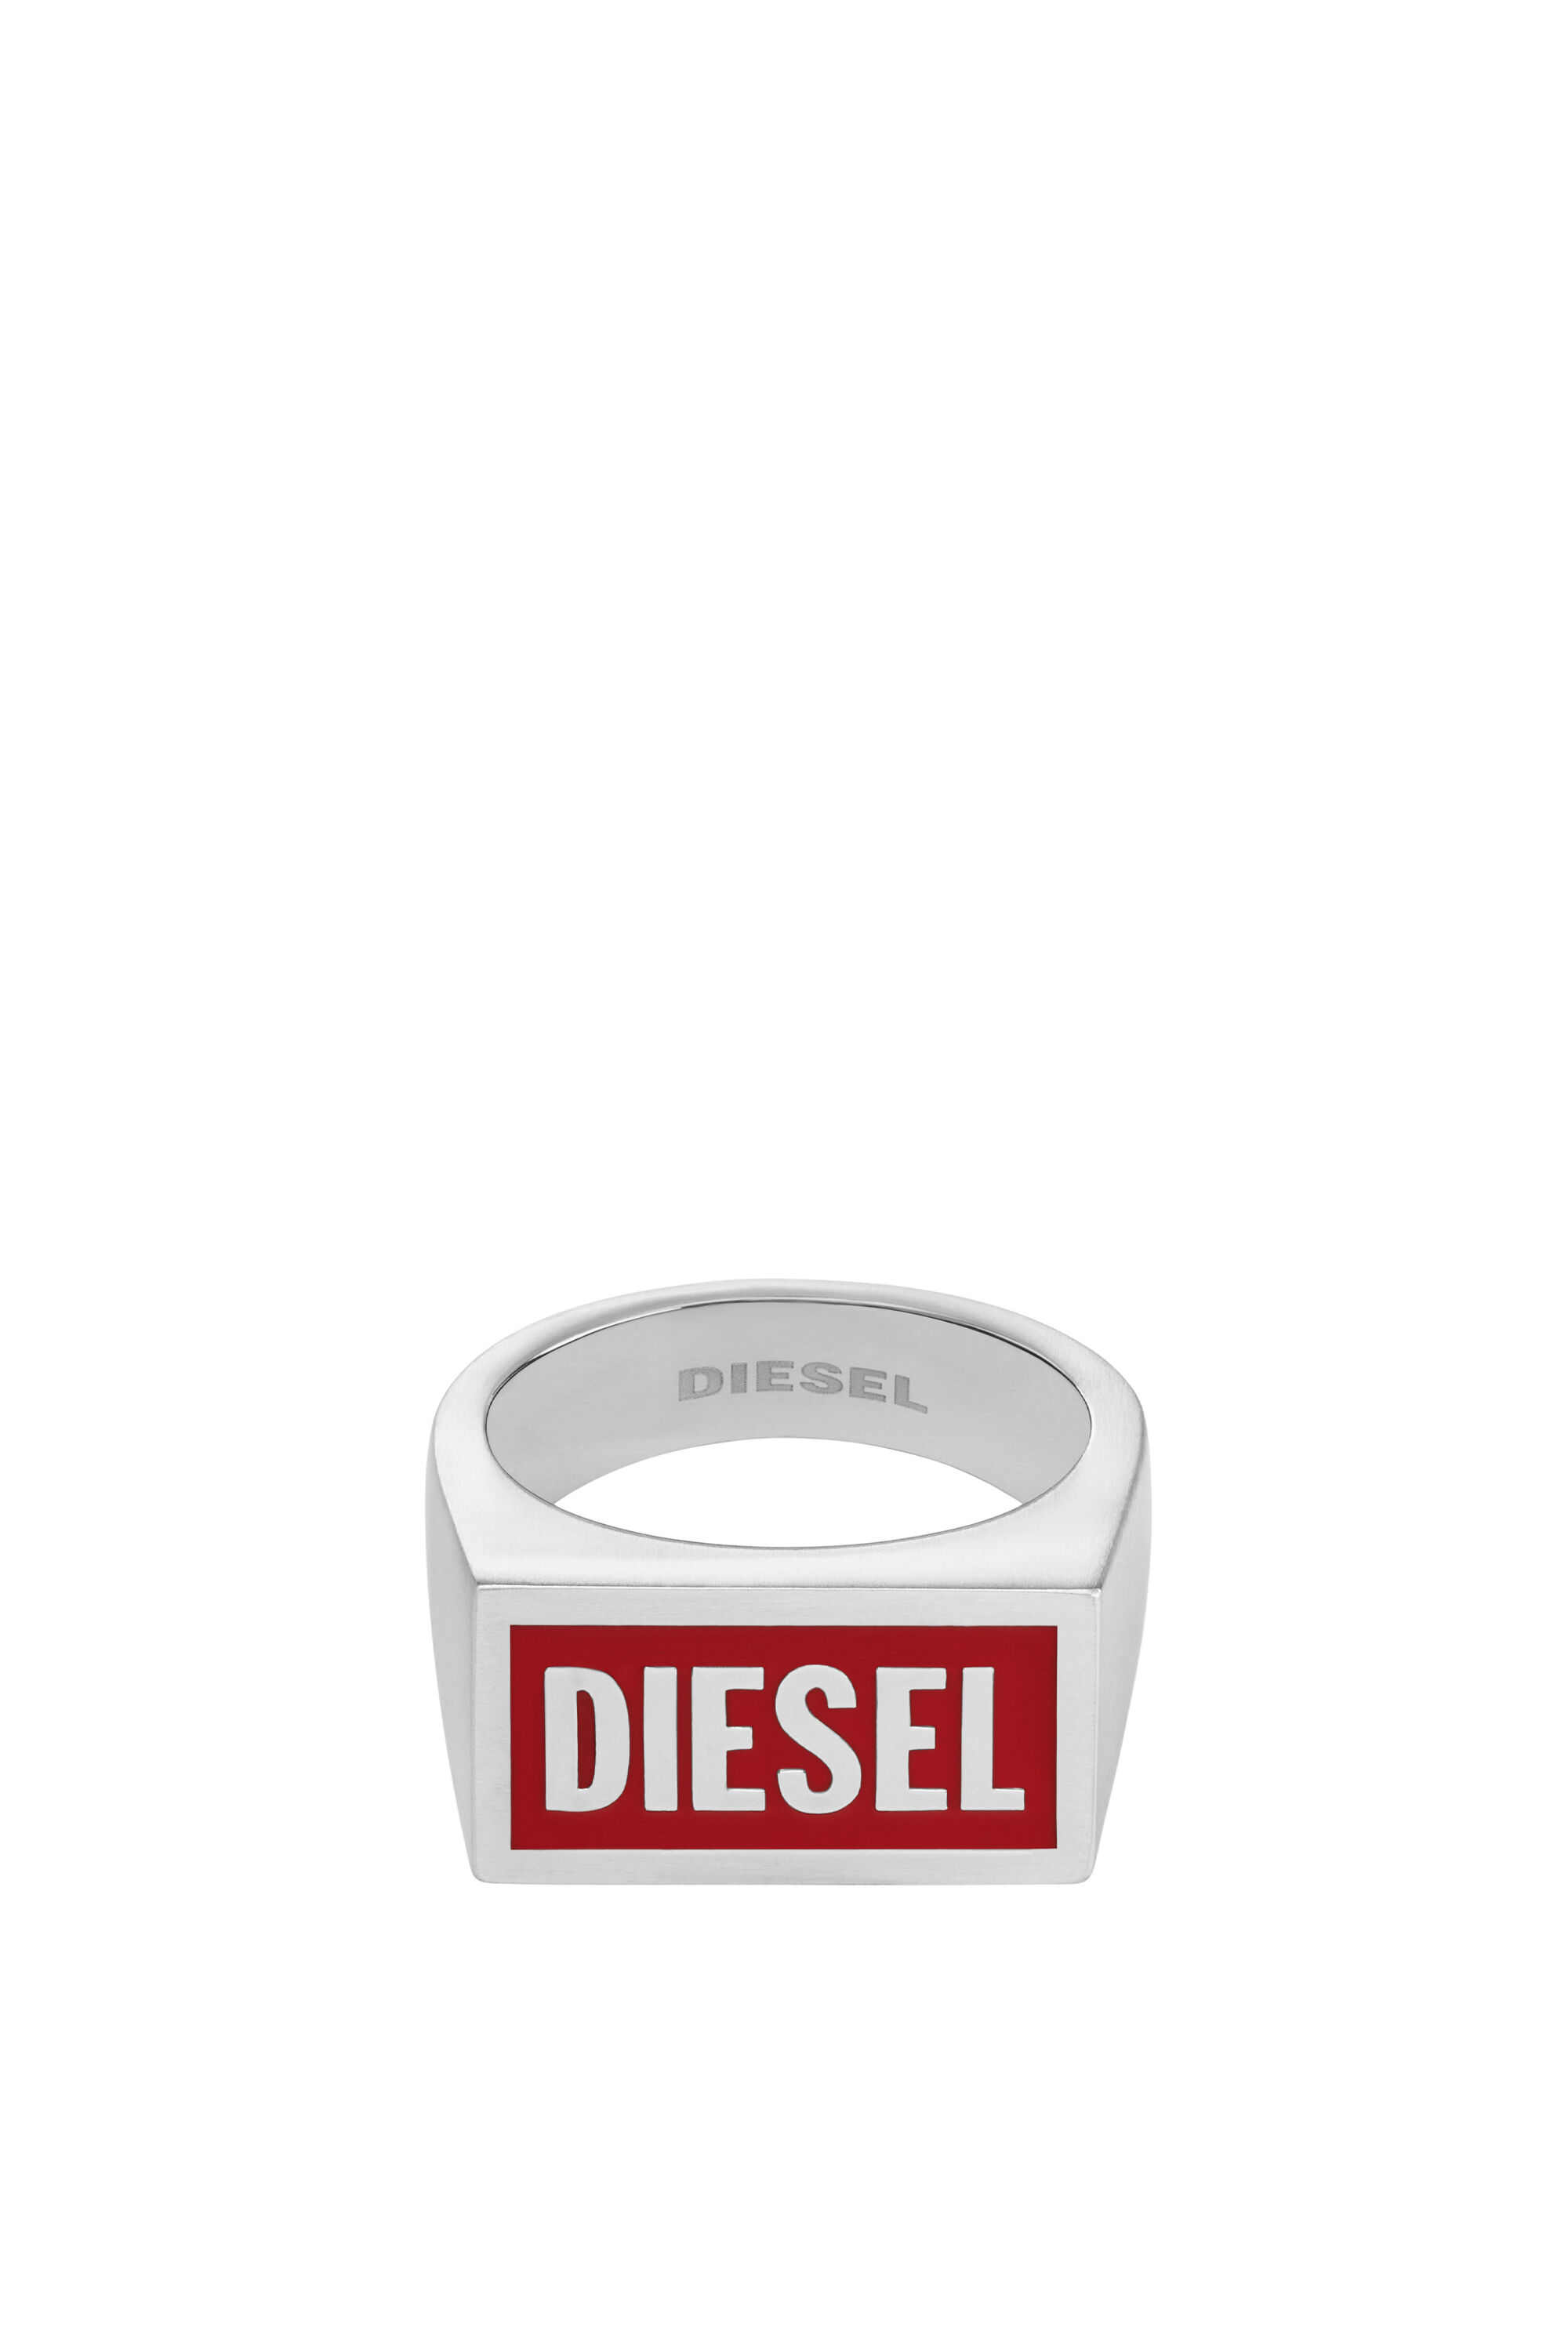 Diesel - DX1366, Plata - Image 2